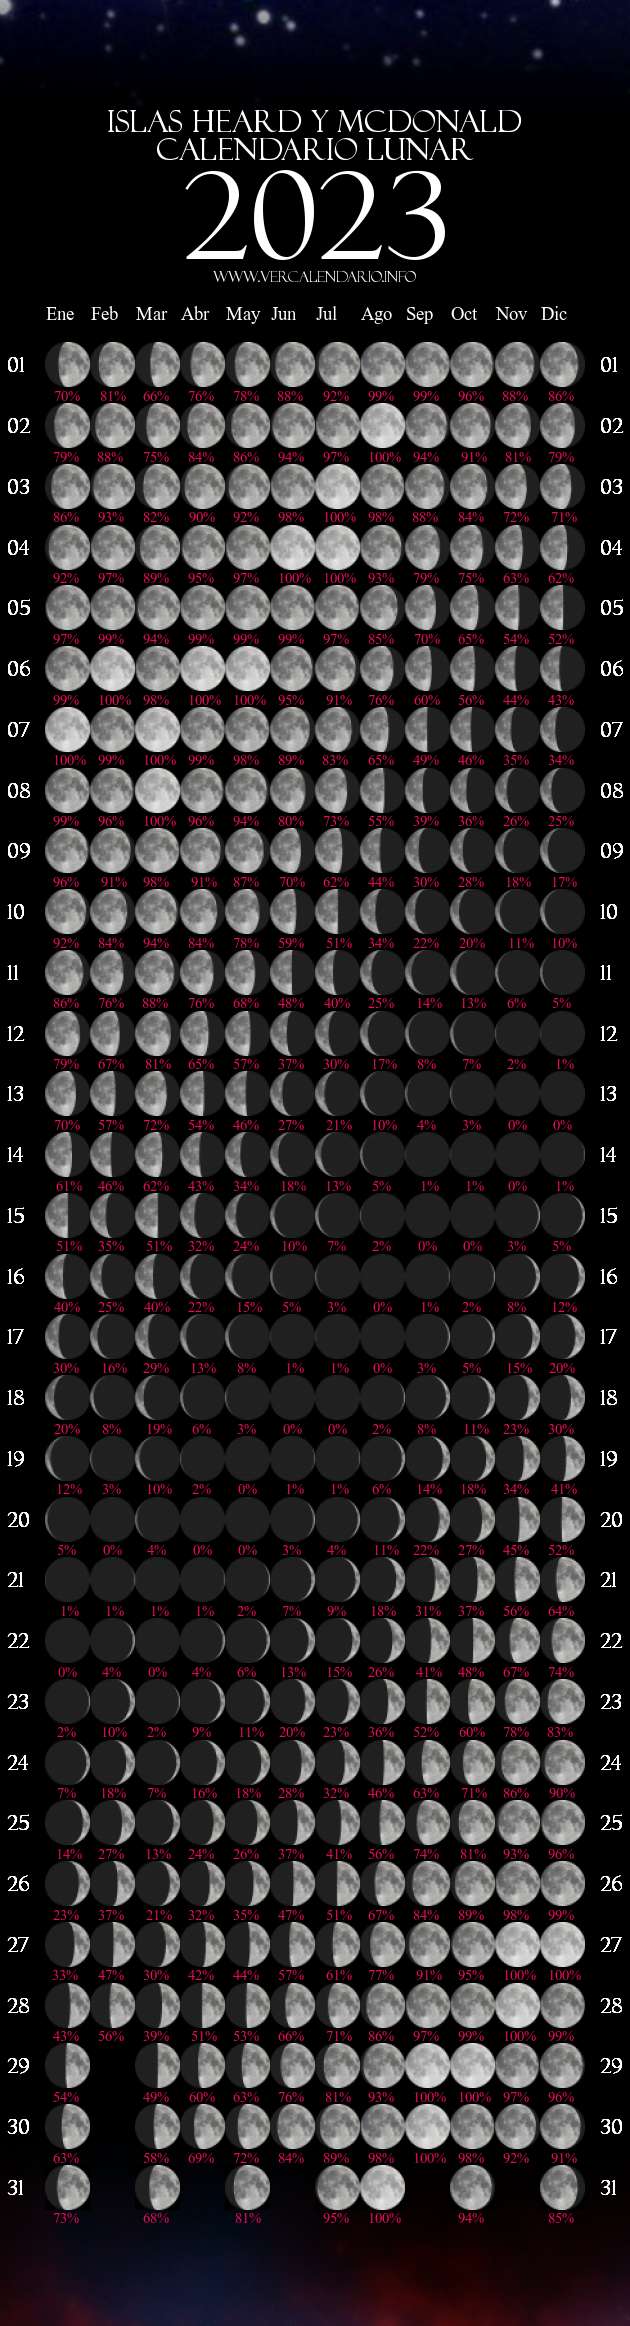 Calendario Lunar 2023 (Islas Heard Y McDonald)